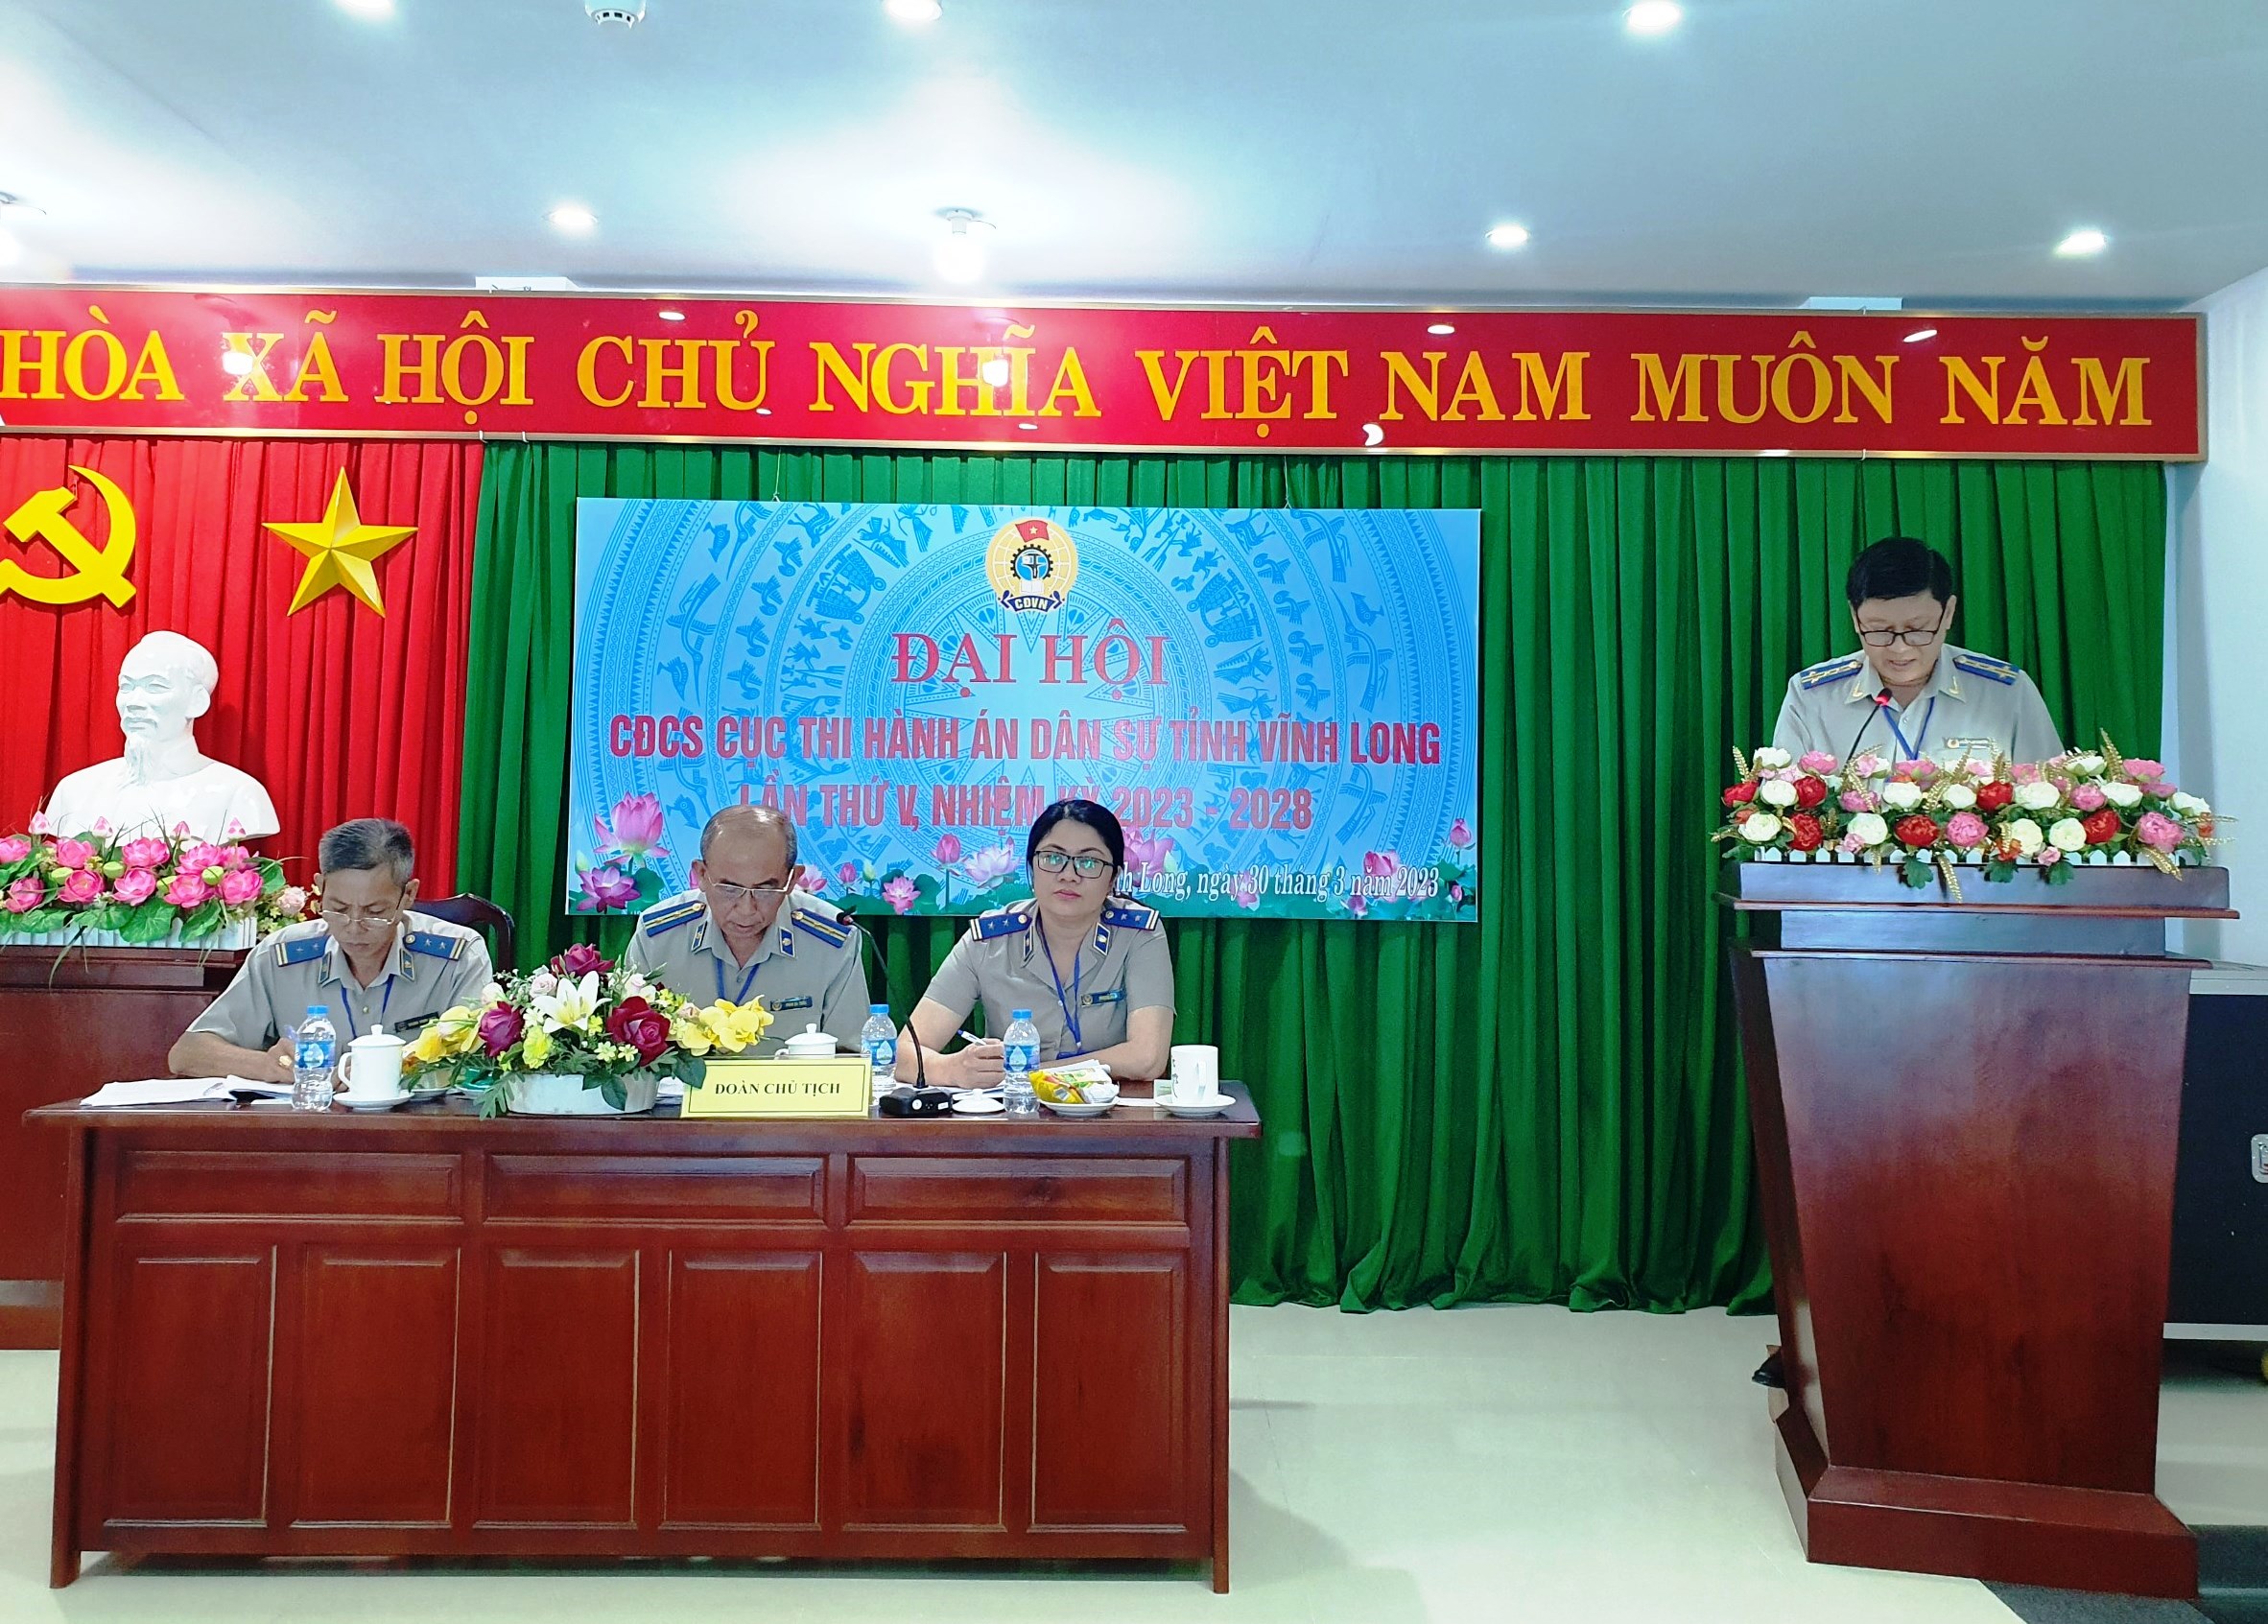 Ngày 30 tháng 3 năm 2023 Công đoàn cơ sở Cục Thi hành án dân sự tỉnh Vĩnh Long đã tổ chức Đại hội Công đoàn lần thứ V, nhiệm kỳ 2023-2028